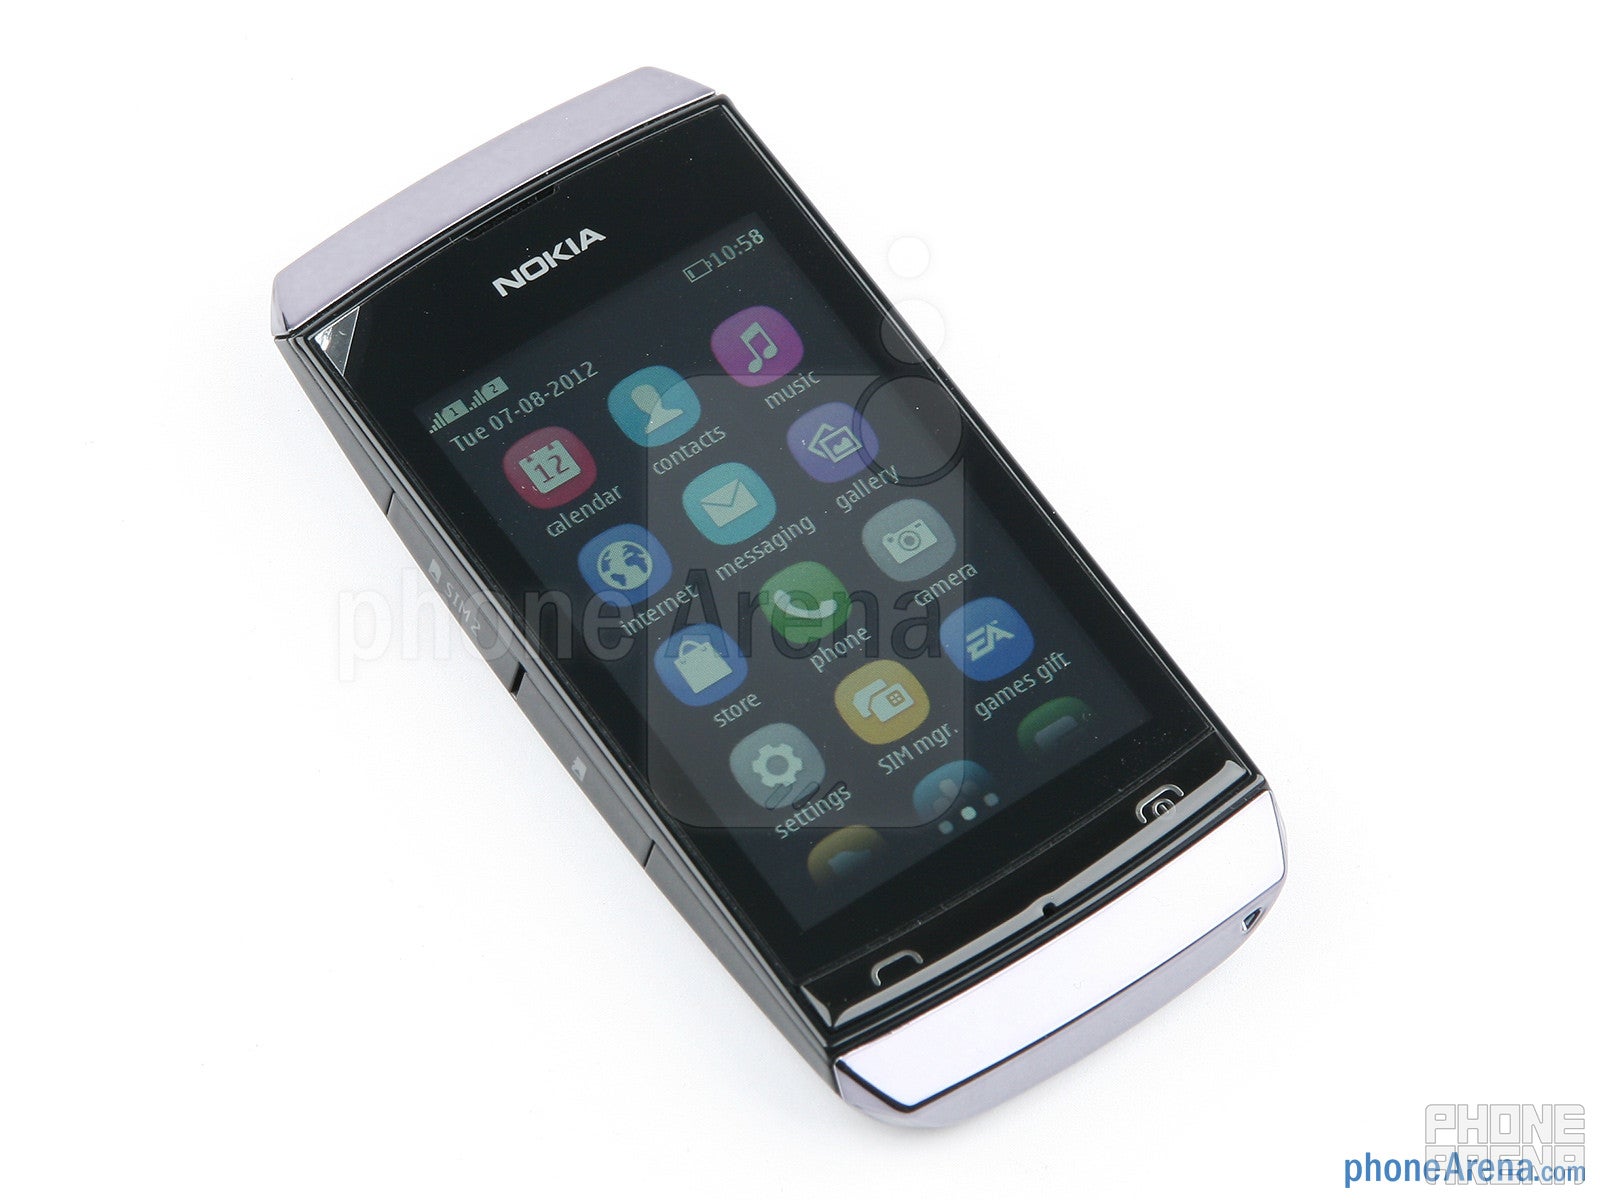 Nokia Asha 305 Review